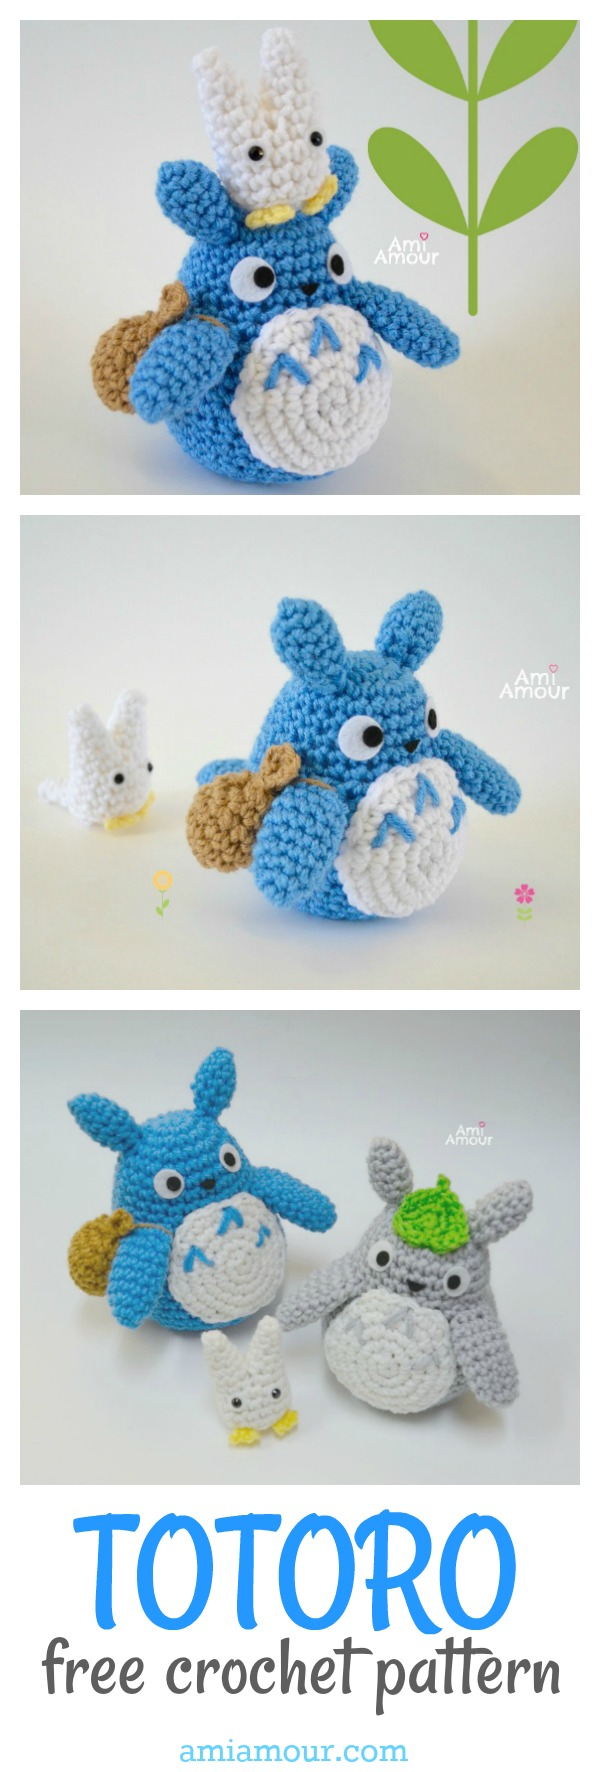 Totoro Crochet Hat Pattern Totoro Crochet Pattern Ami Amour